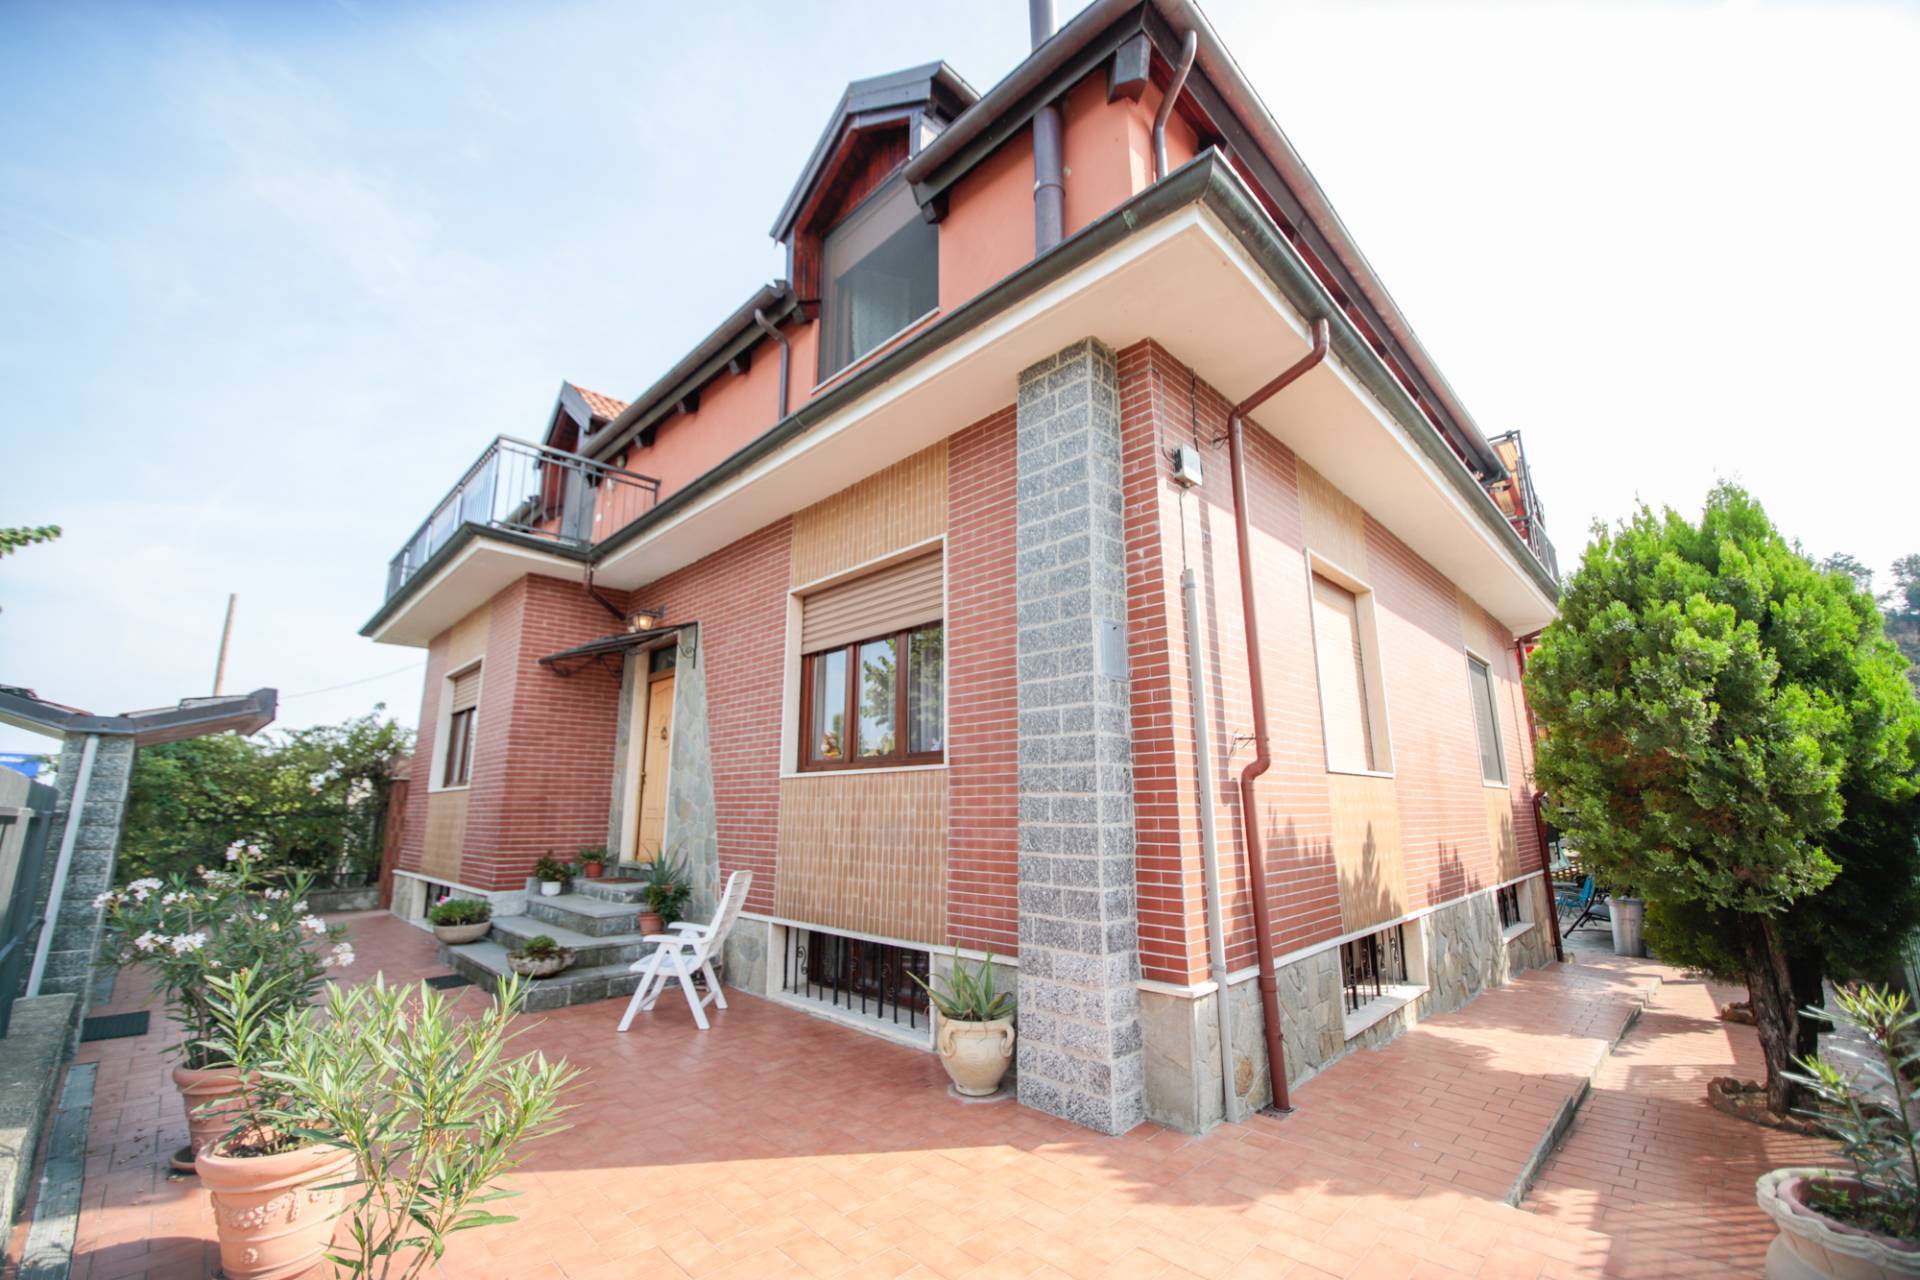 Villa Bifamiliare in vendita a Lombardore, 9 locali, prezzo € 428.000 | PortaleAgenzieImmobiliari.it